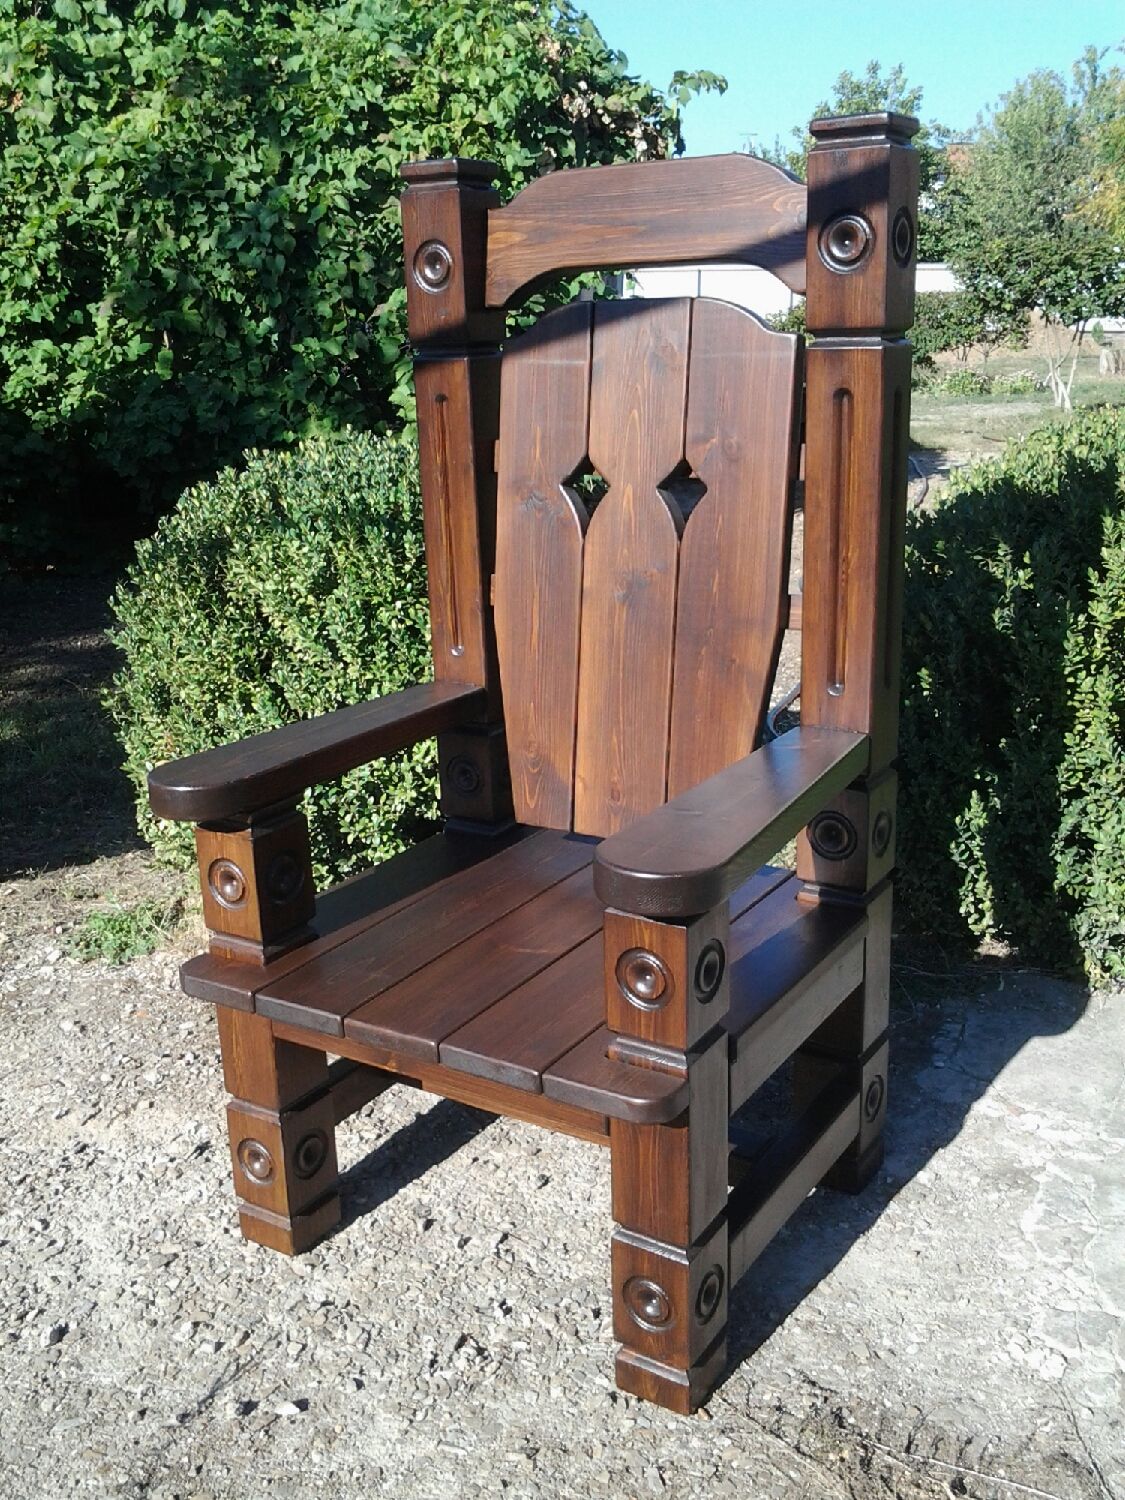 Деревянное Кресло Интернет Магазин